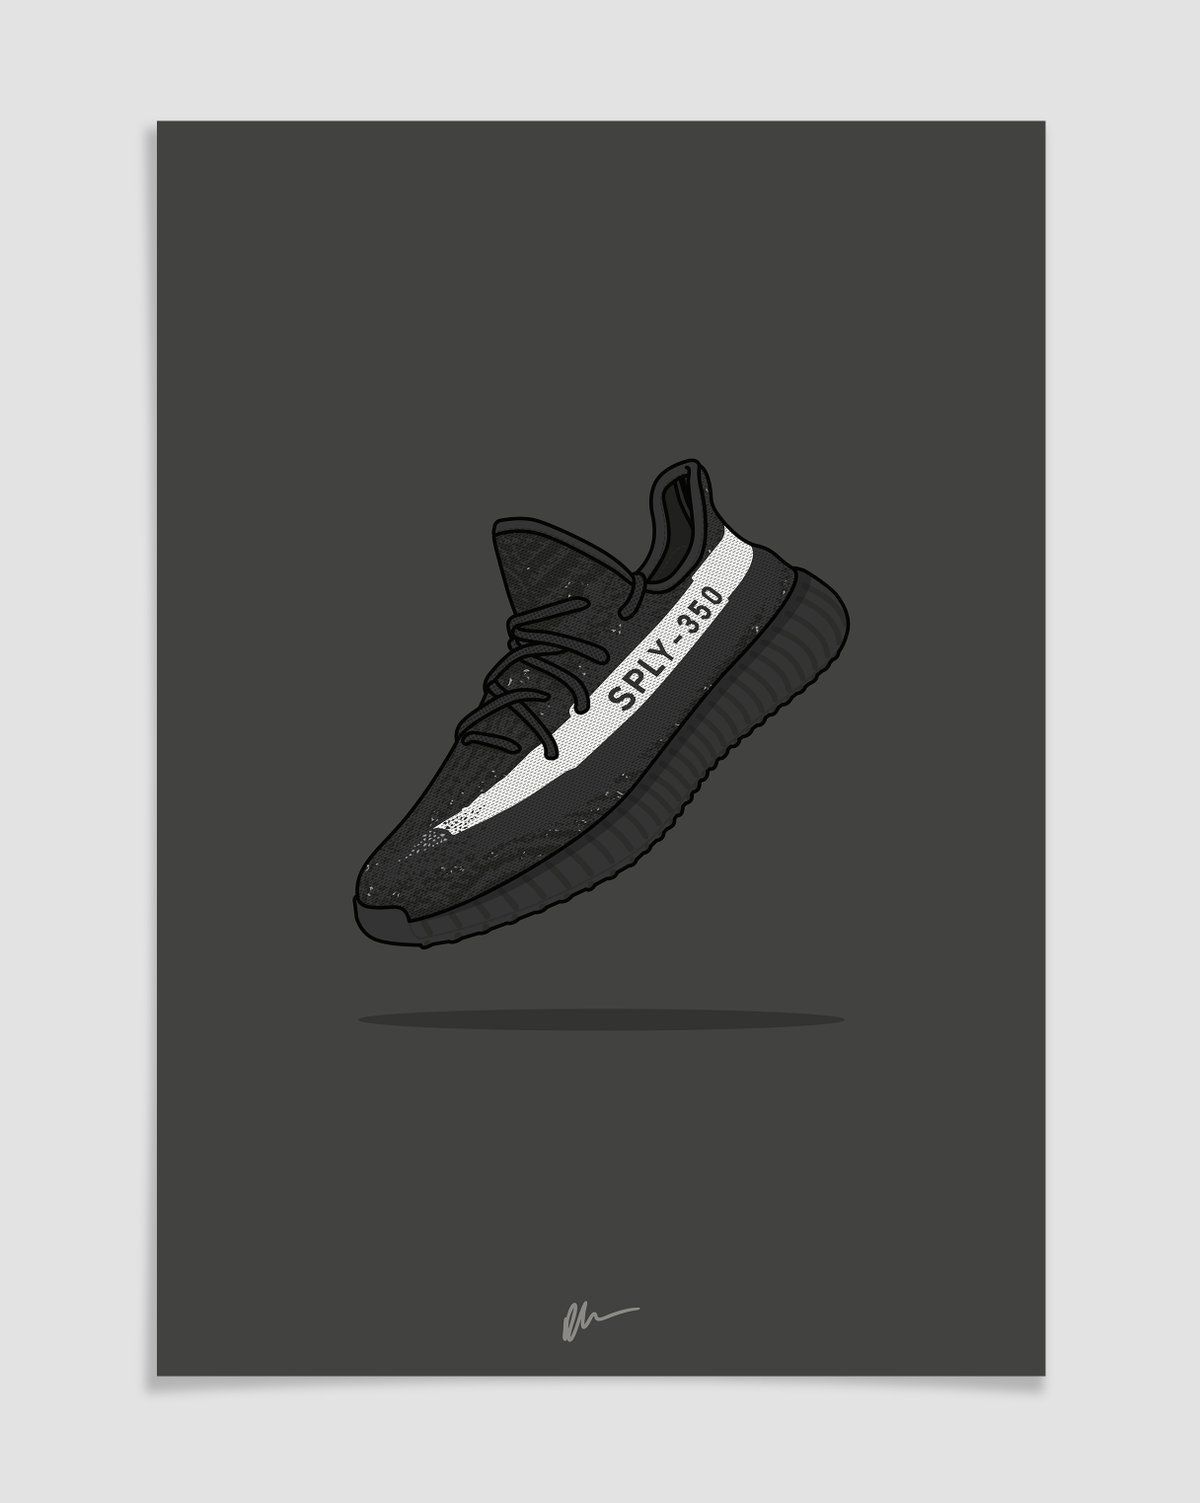 Image of Yeezy 350 v2 Black White. Sneakers wallpaper, Shoes wallpaper, Sneaker art